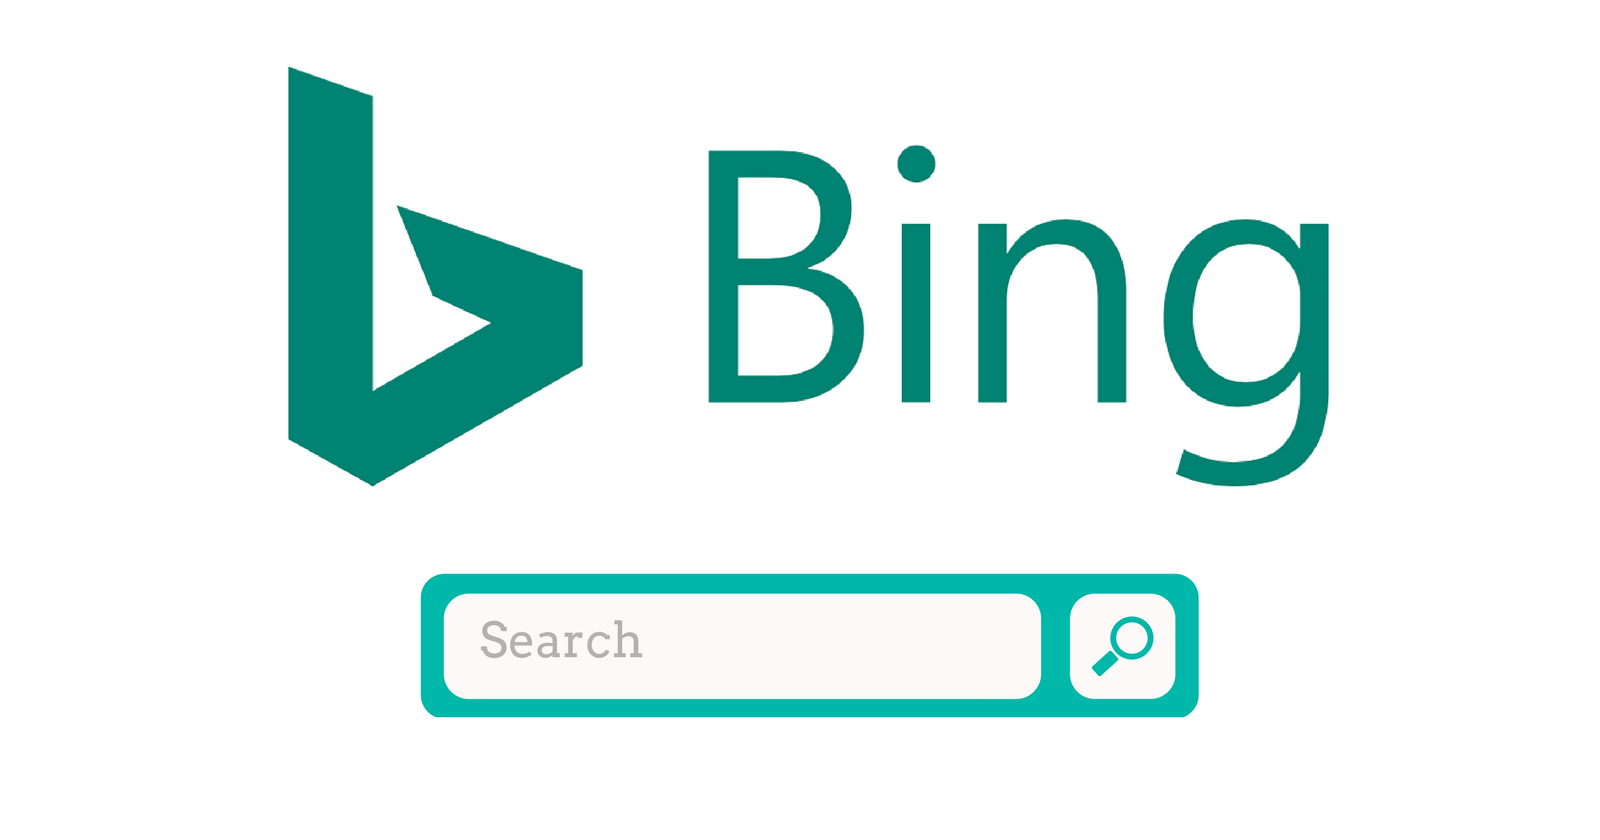 bing sign logo